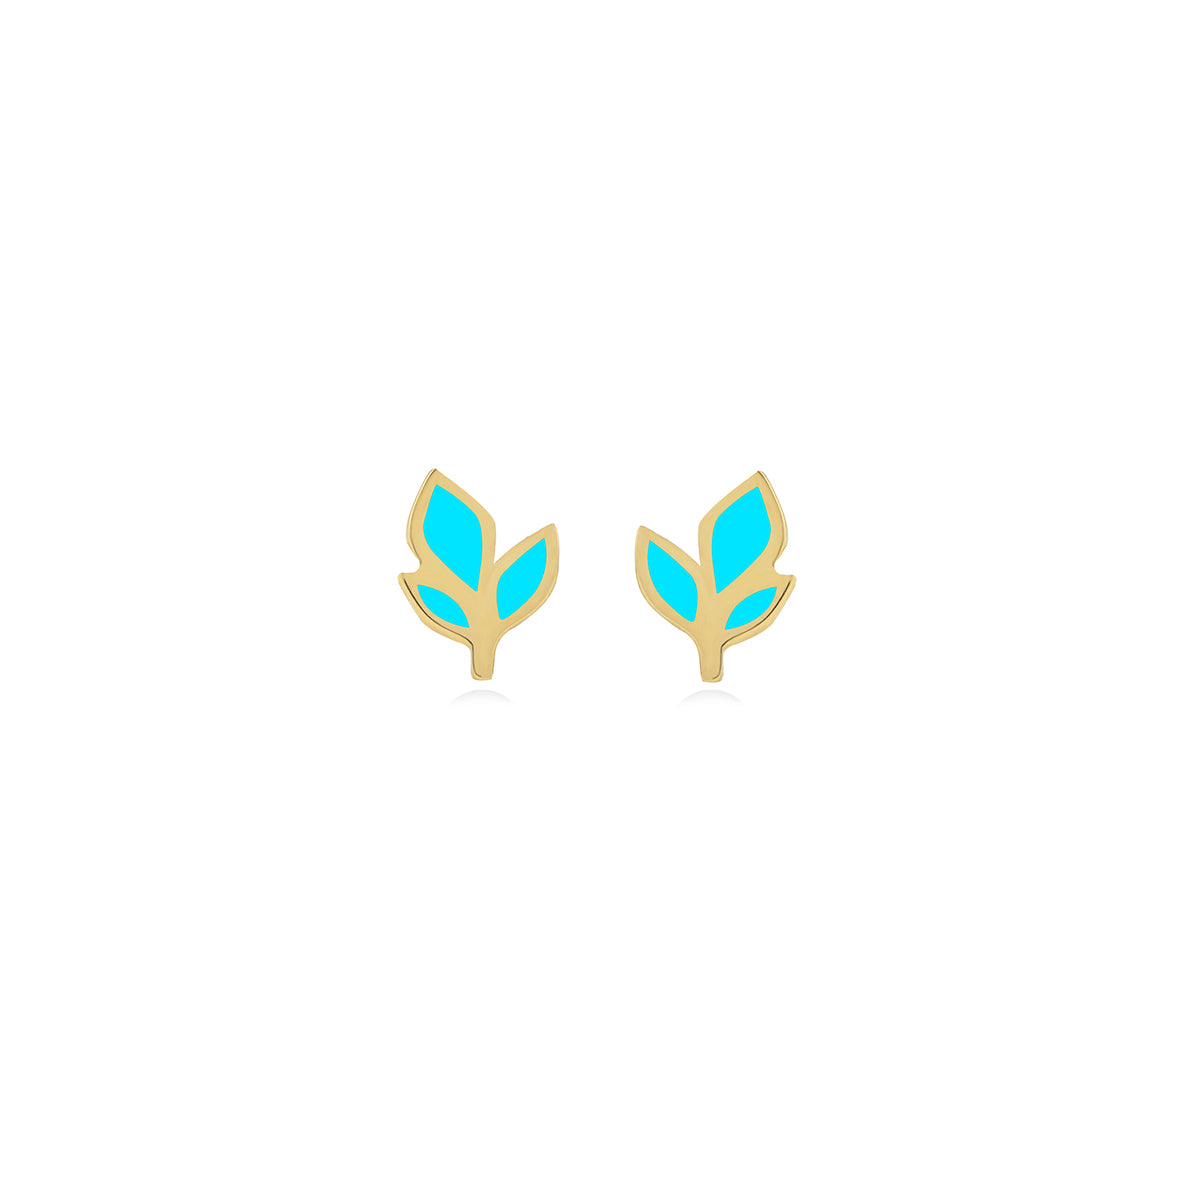 Leaf Shape Earrings in 18k Yellow Gold